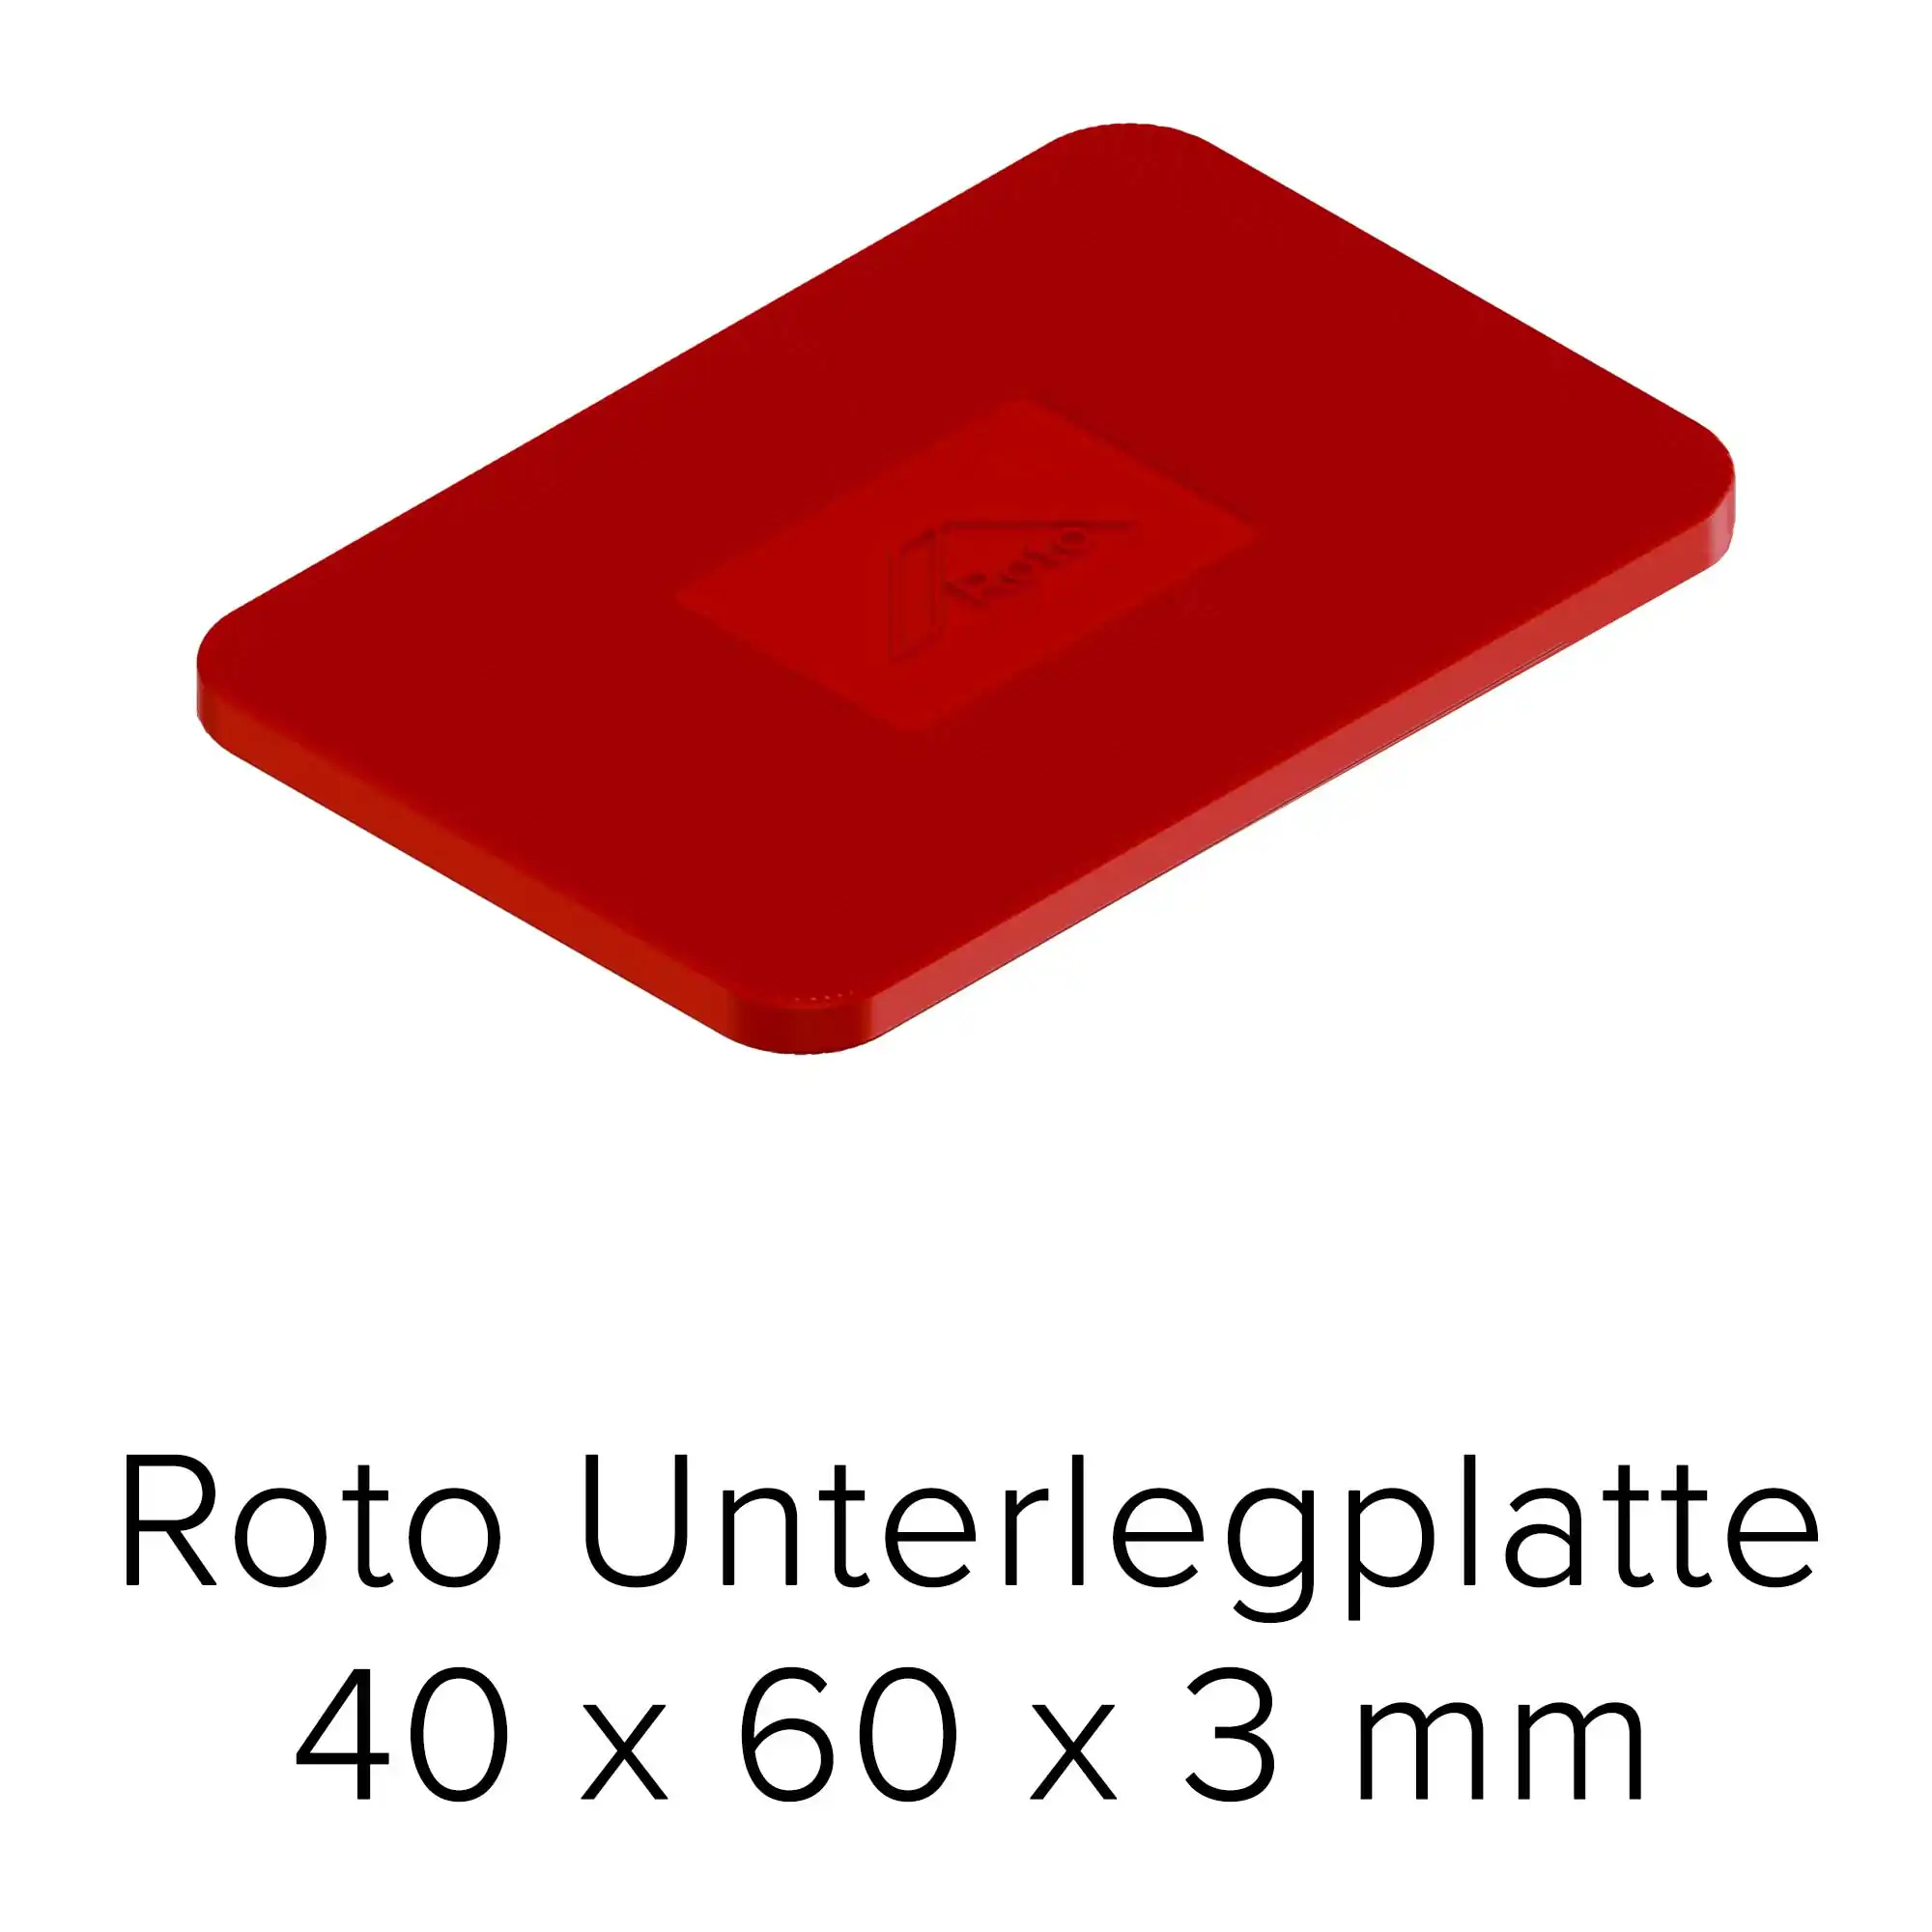 Roto Unterlegplatte 40 x 60 x 3 mm